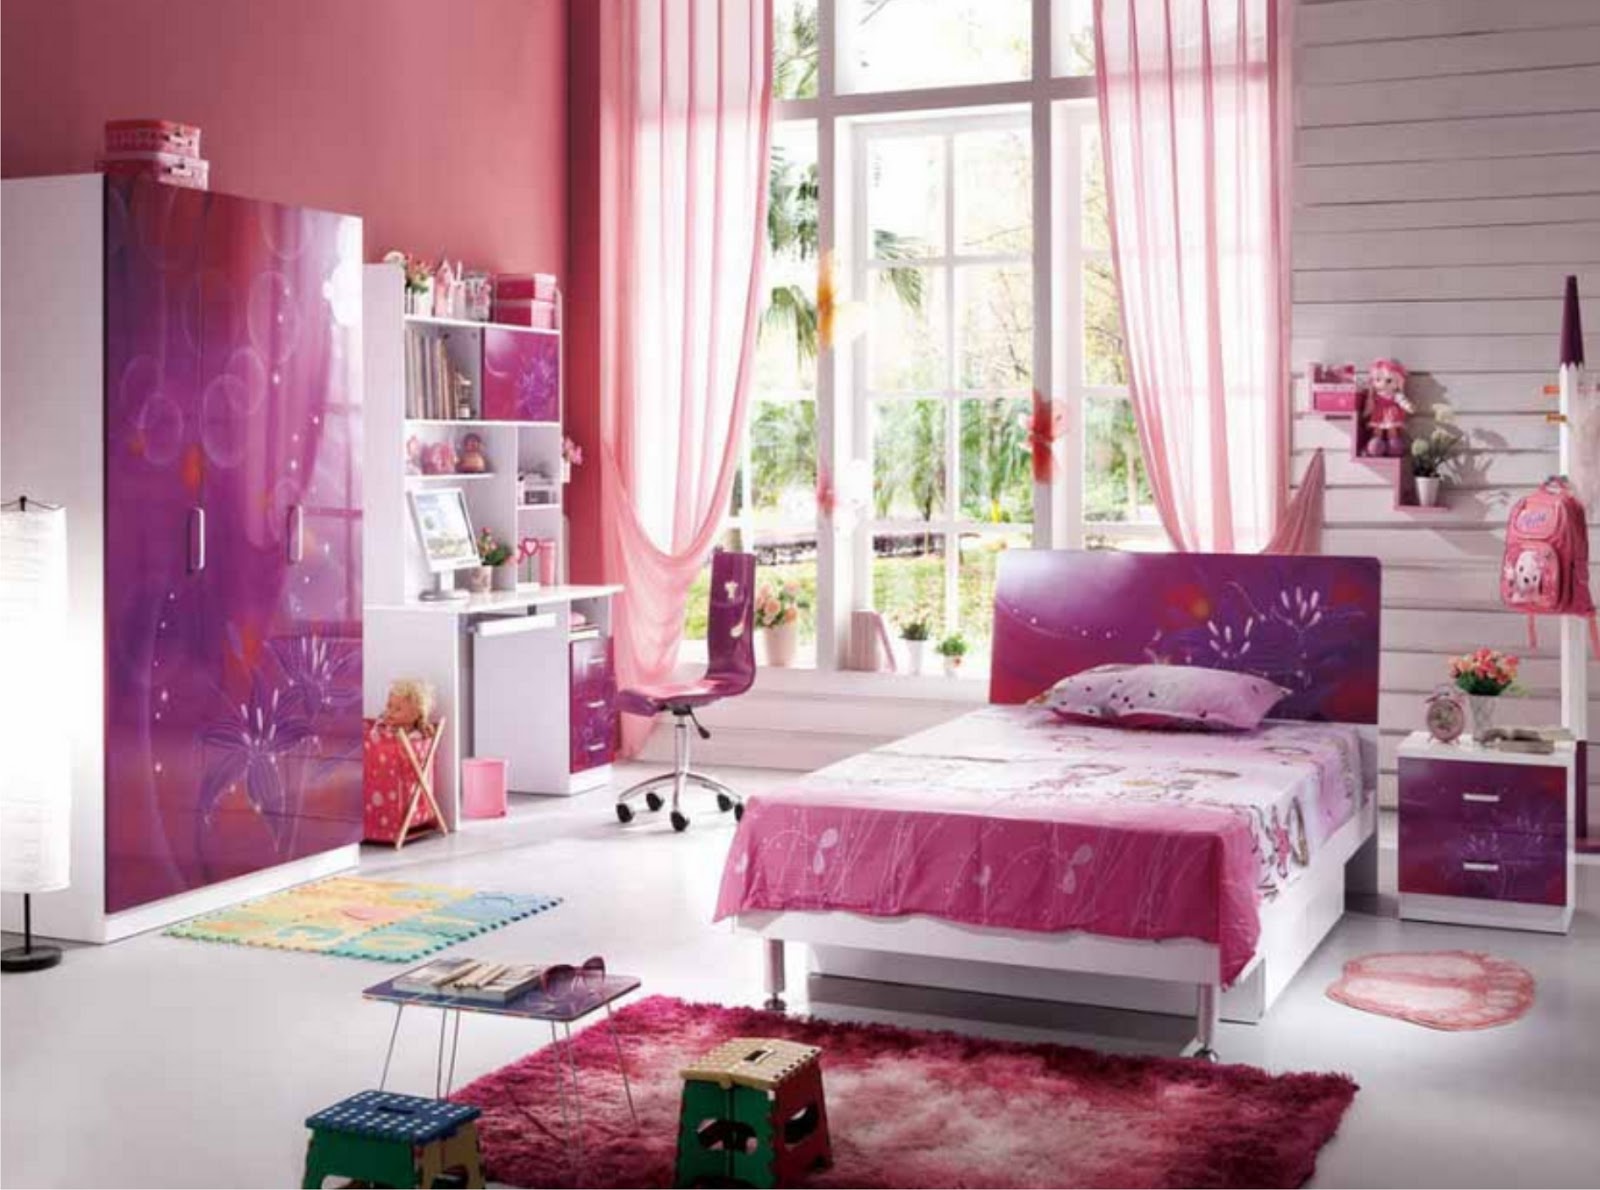 Desain Rumah Minimalis Pink By Desain Rumah Minimalis 2015